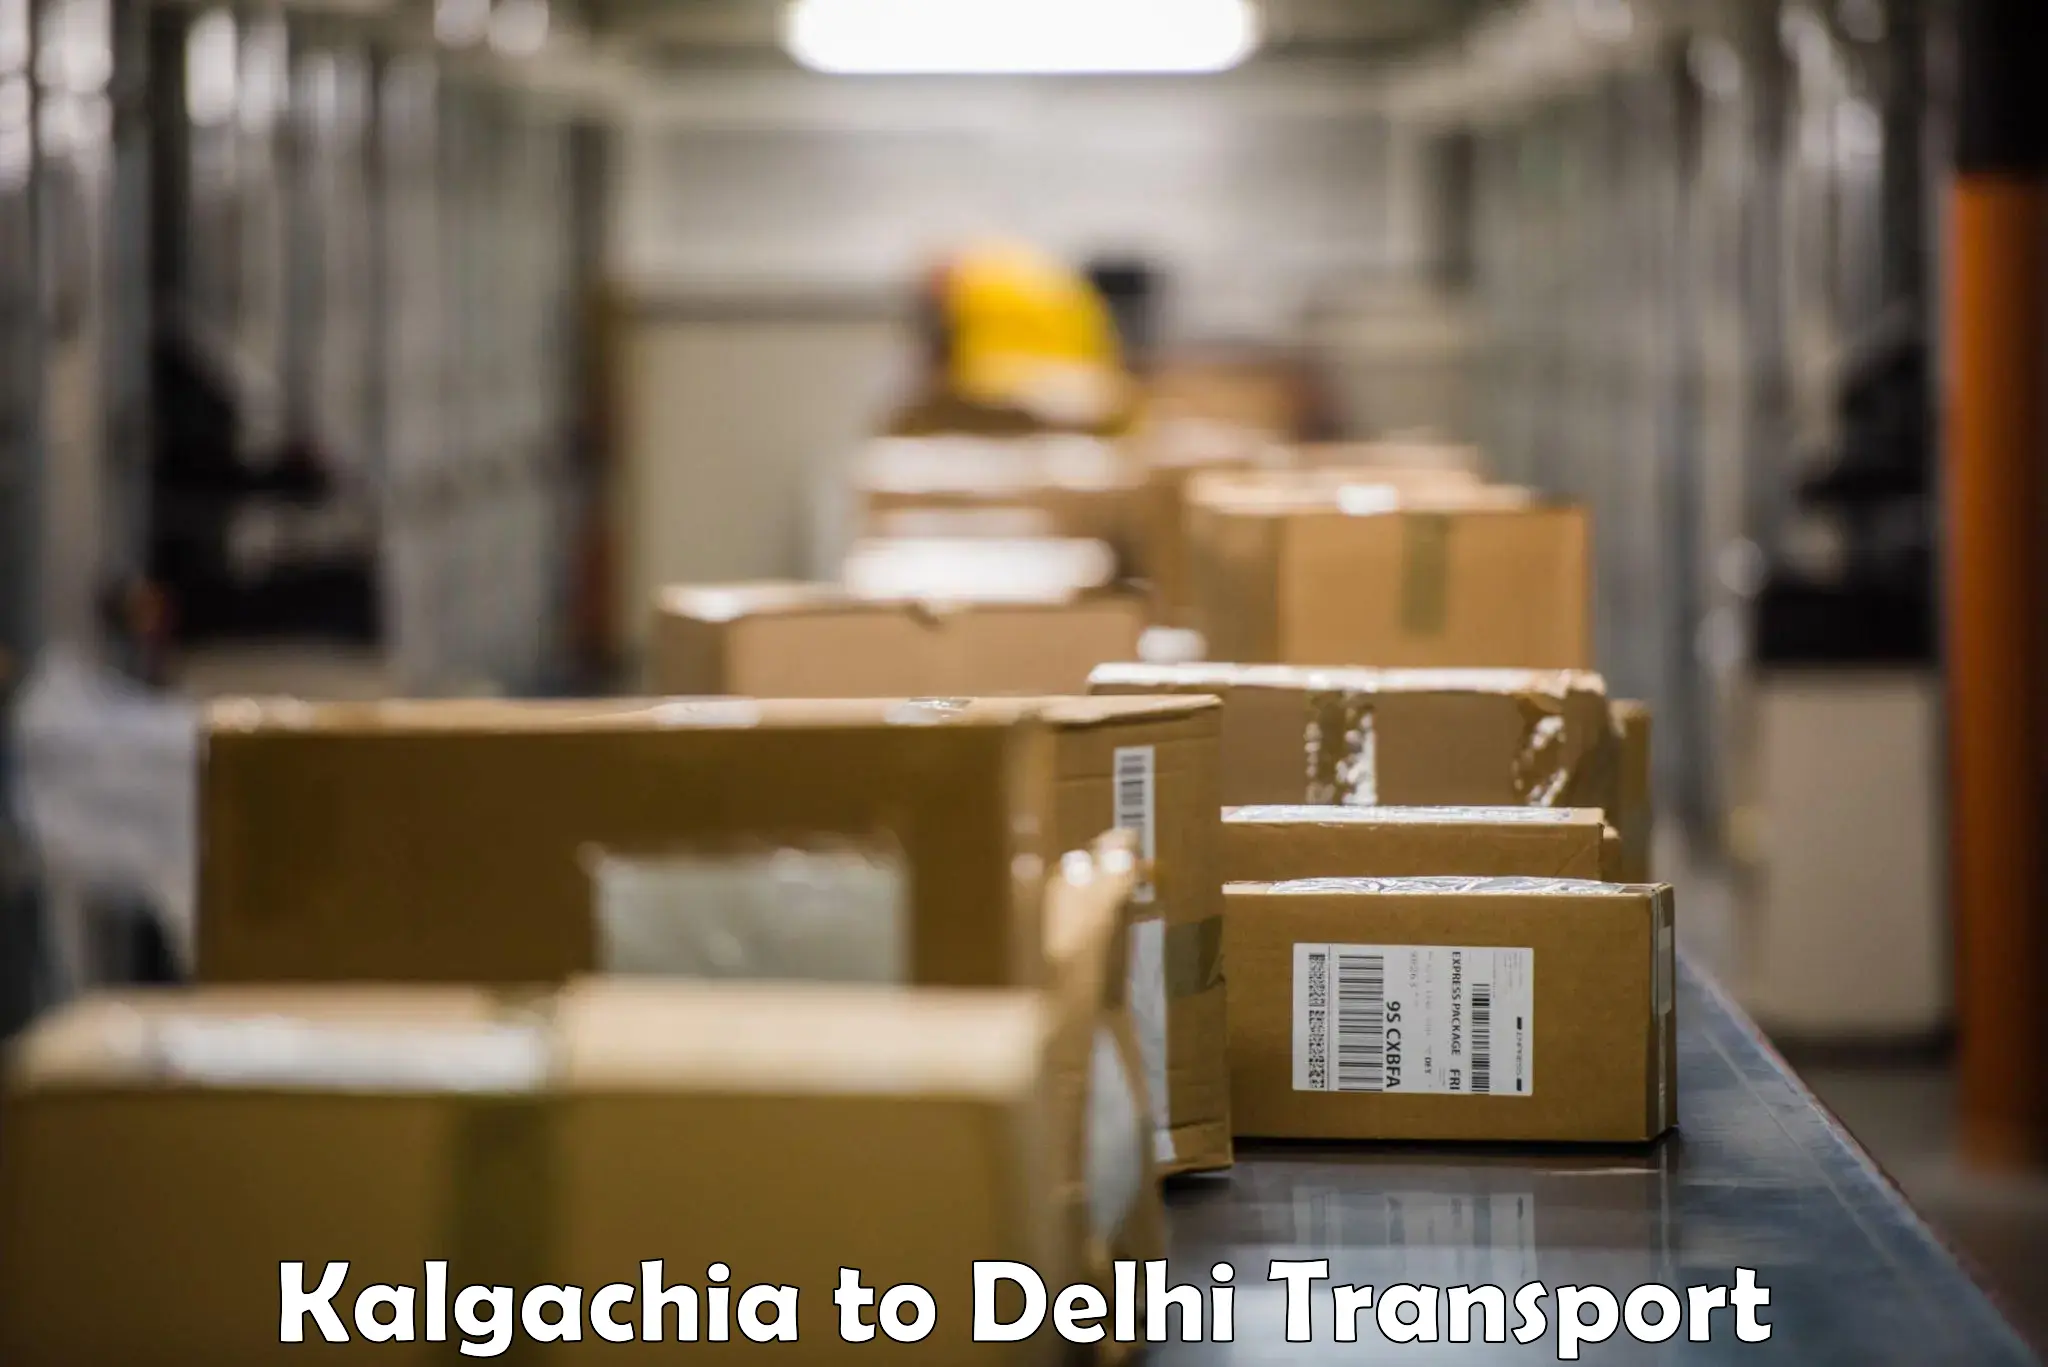 Container transportation services Kalgachia to Delhi